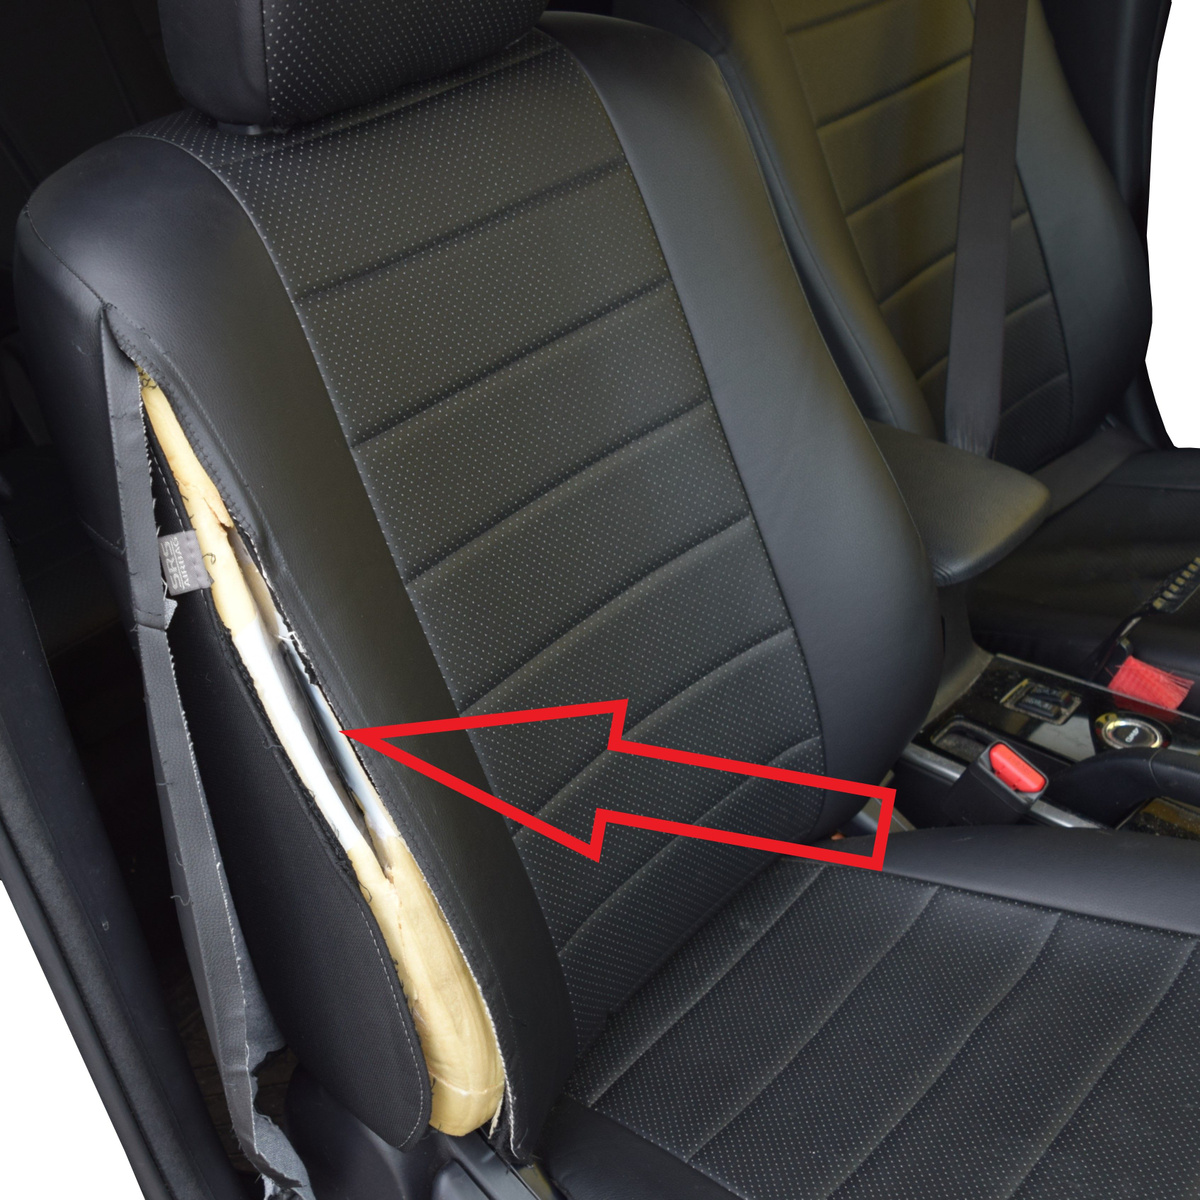 Авточехлы не препятствуют срабатыванию подушки безопасности, что подтверждено сертификатом соответствия № РОСС RU.МТ25.Н00520